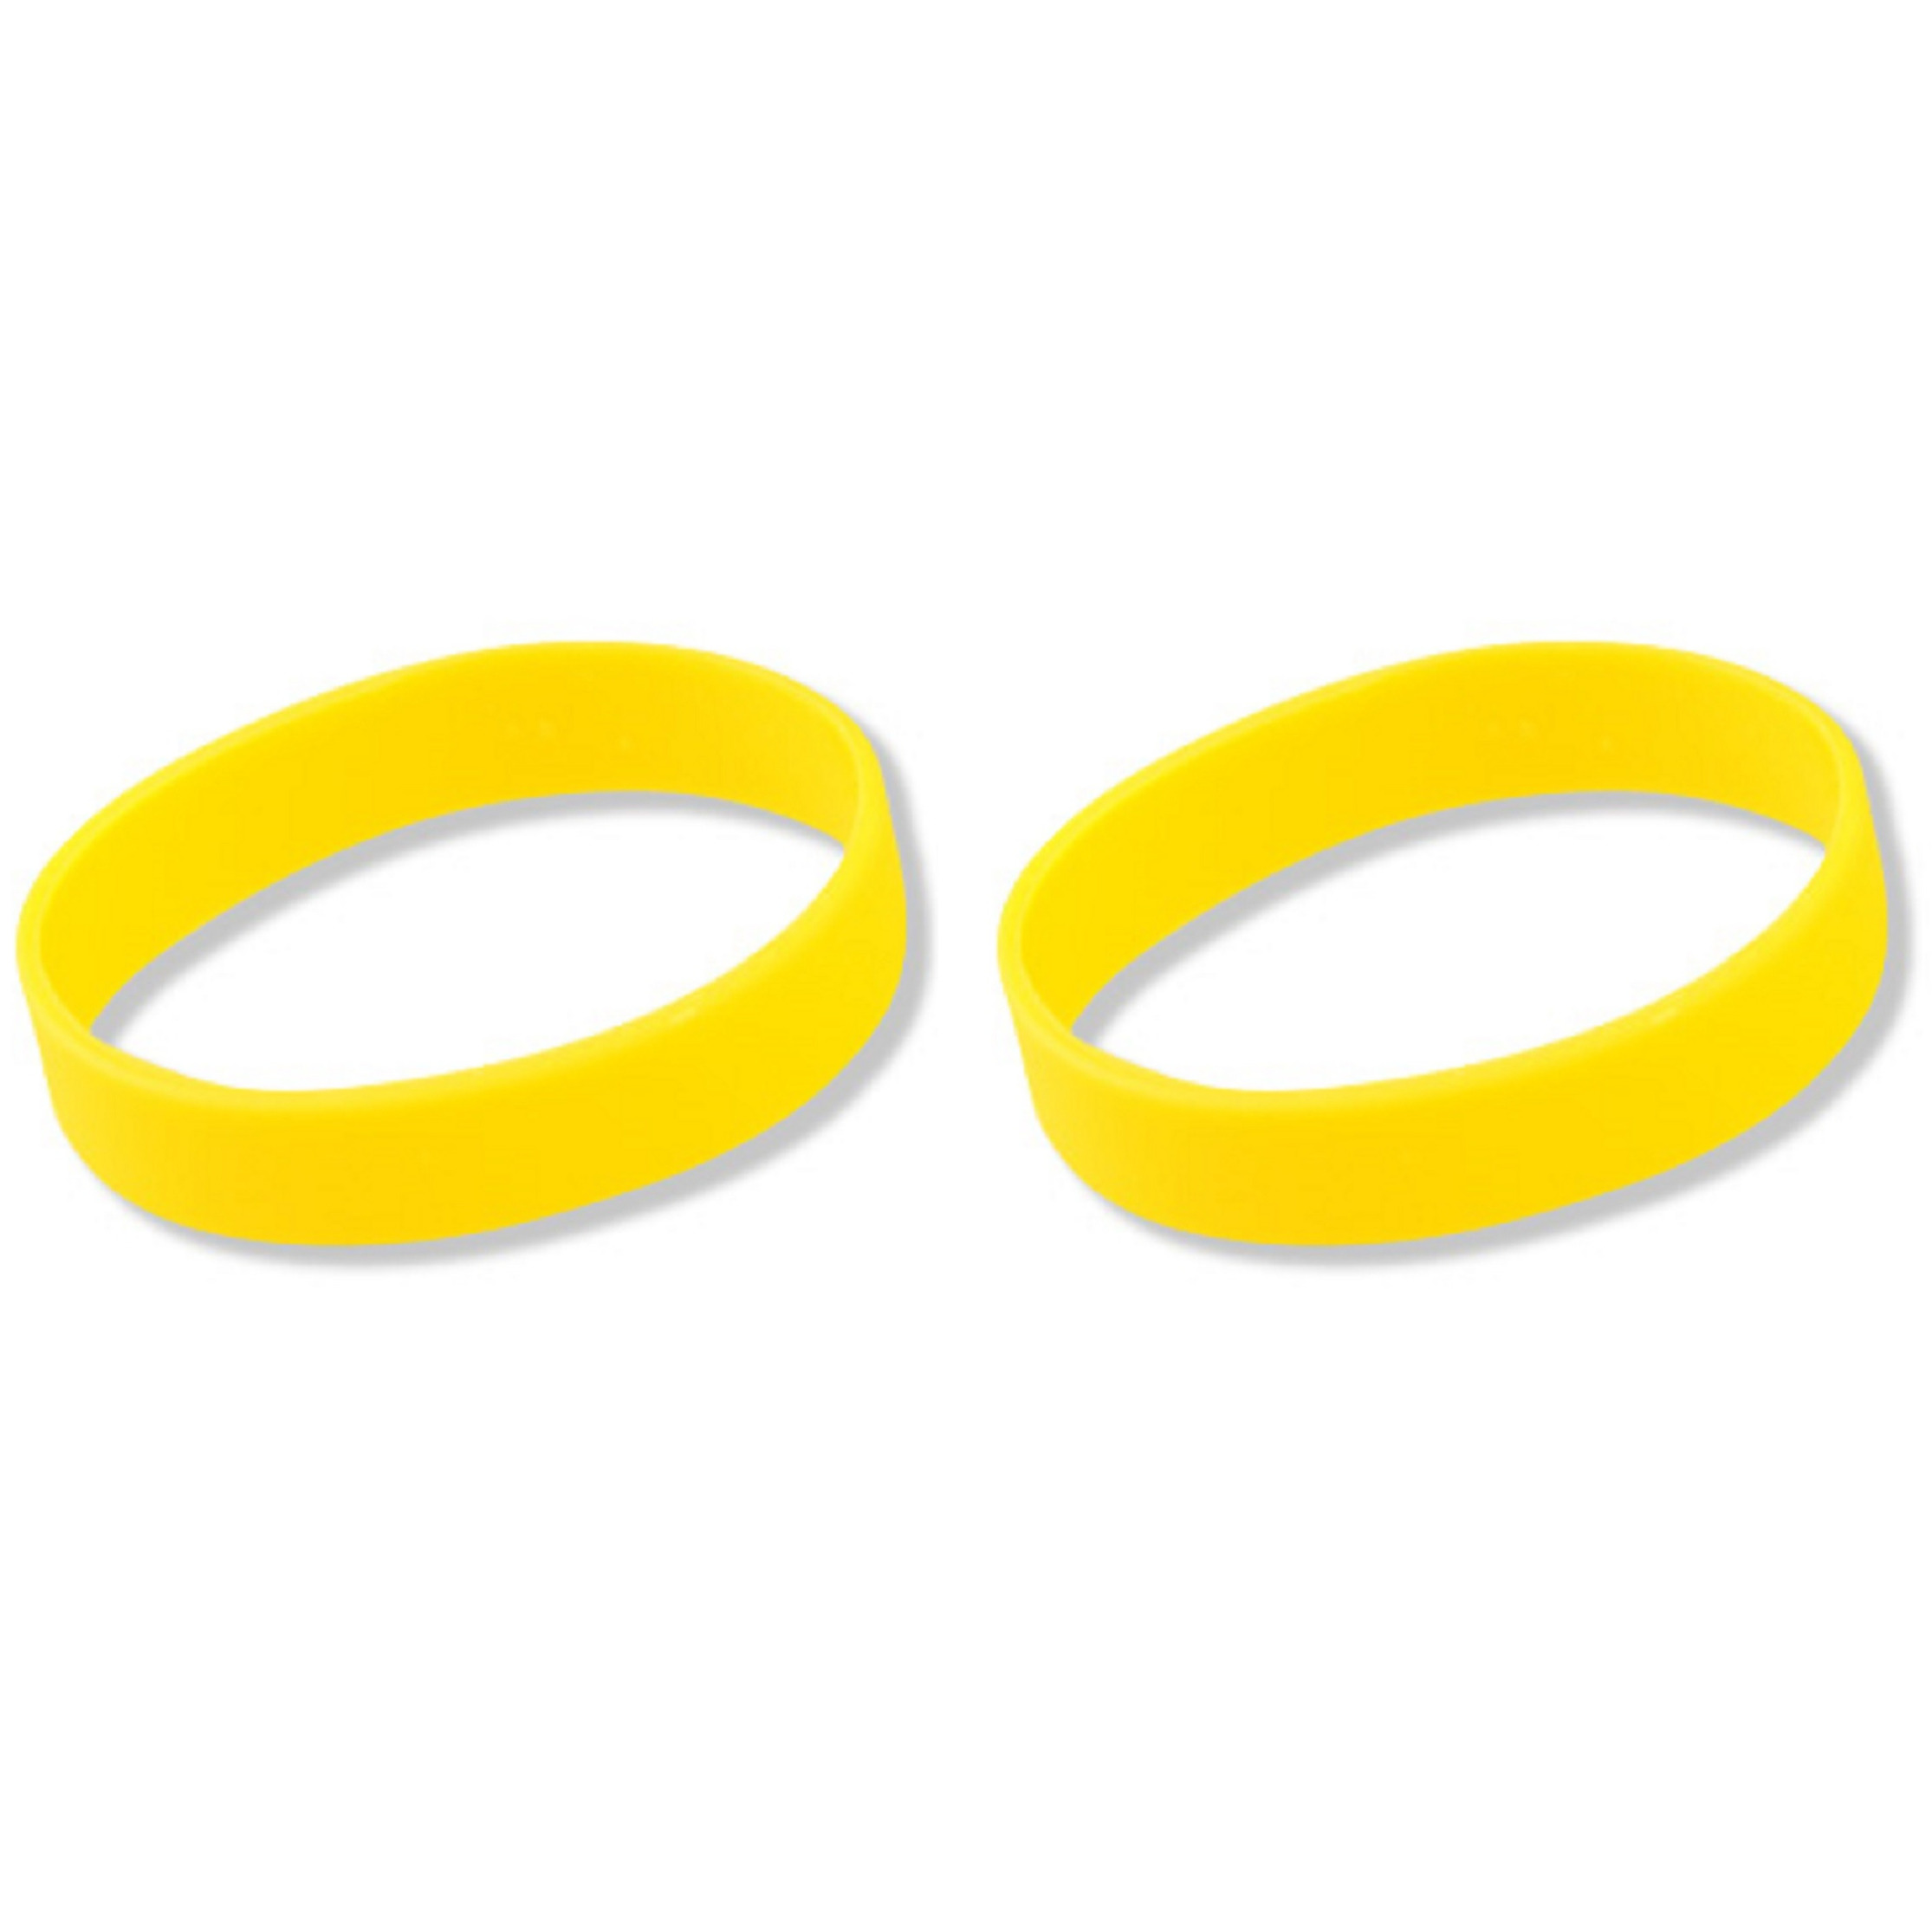 25x stuks siliconen armband geel